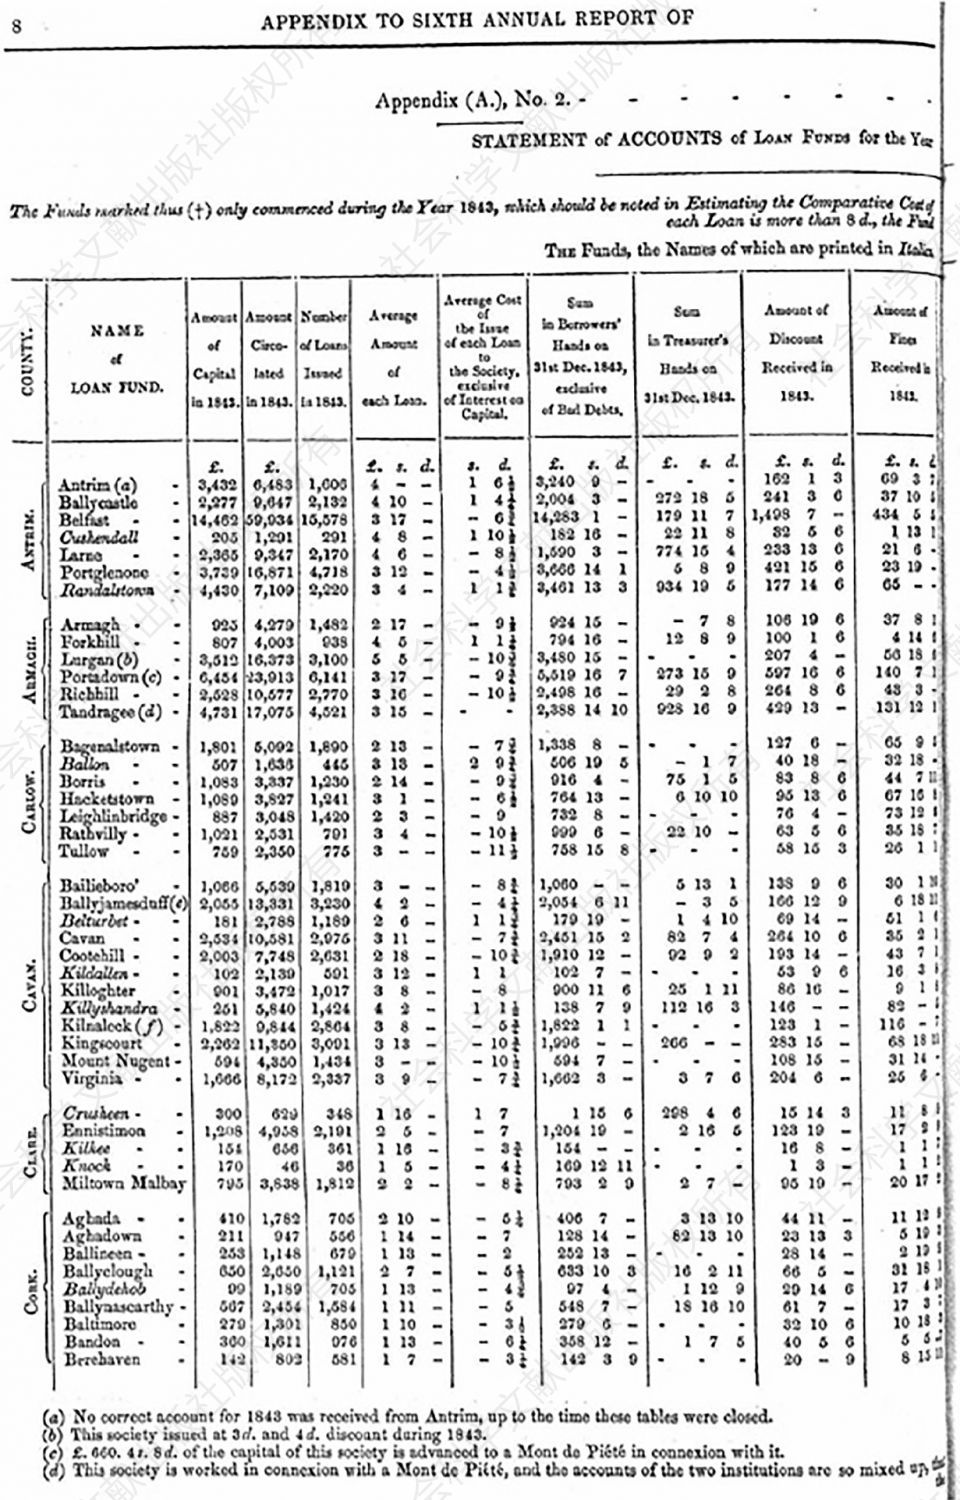 图1 爱尔兰借贷基金委员会1843年年度报告附录中的样页